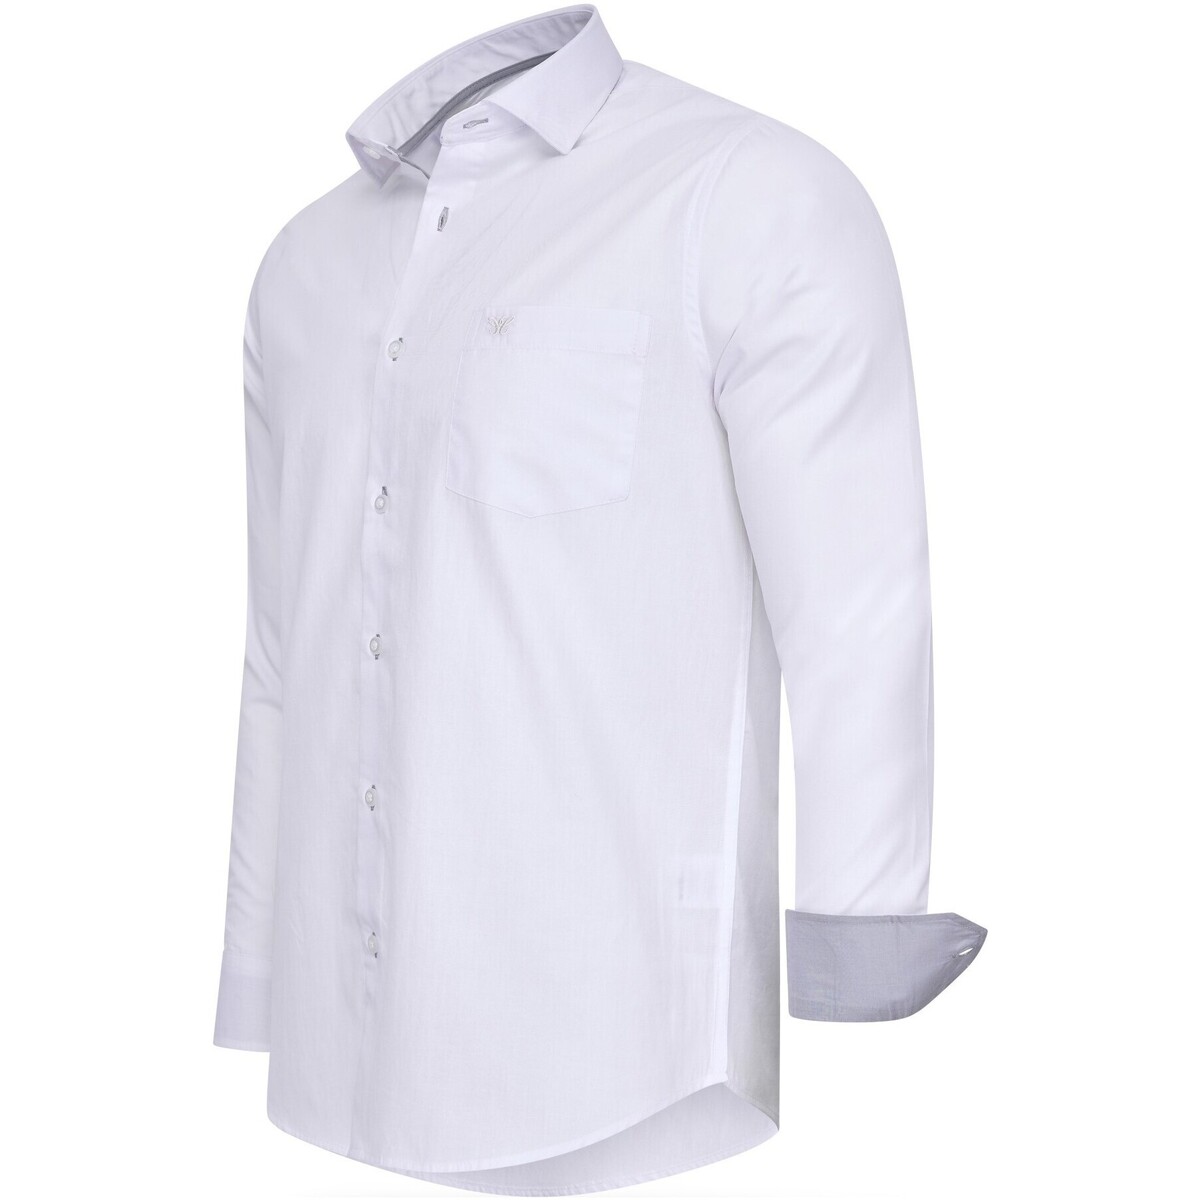 Vêtements Femme Canapés 2 places Overhemd Uni Blanc